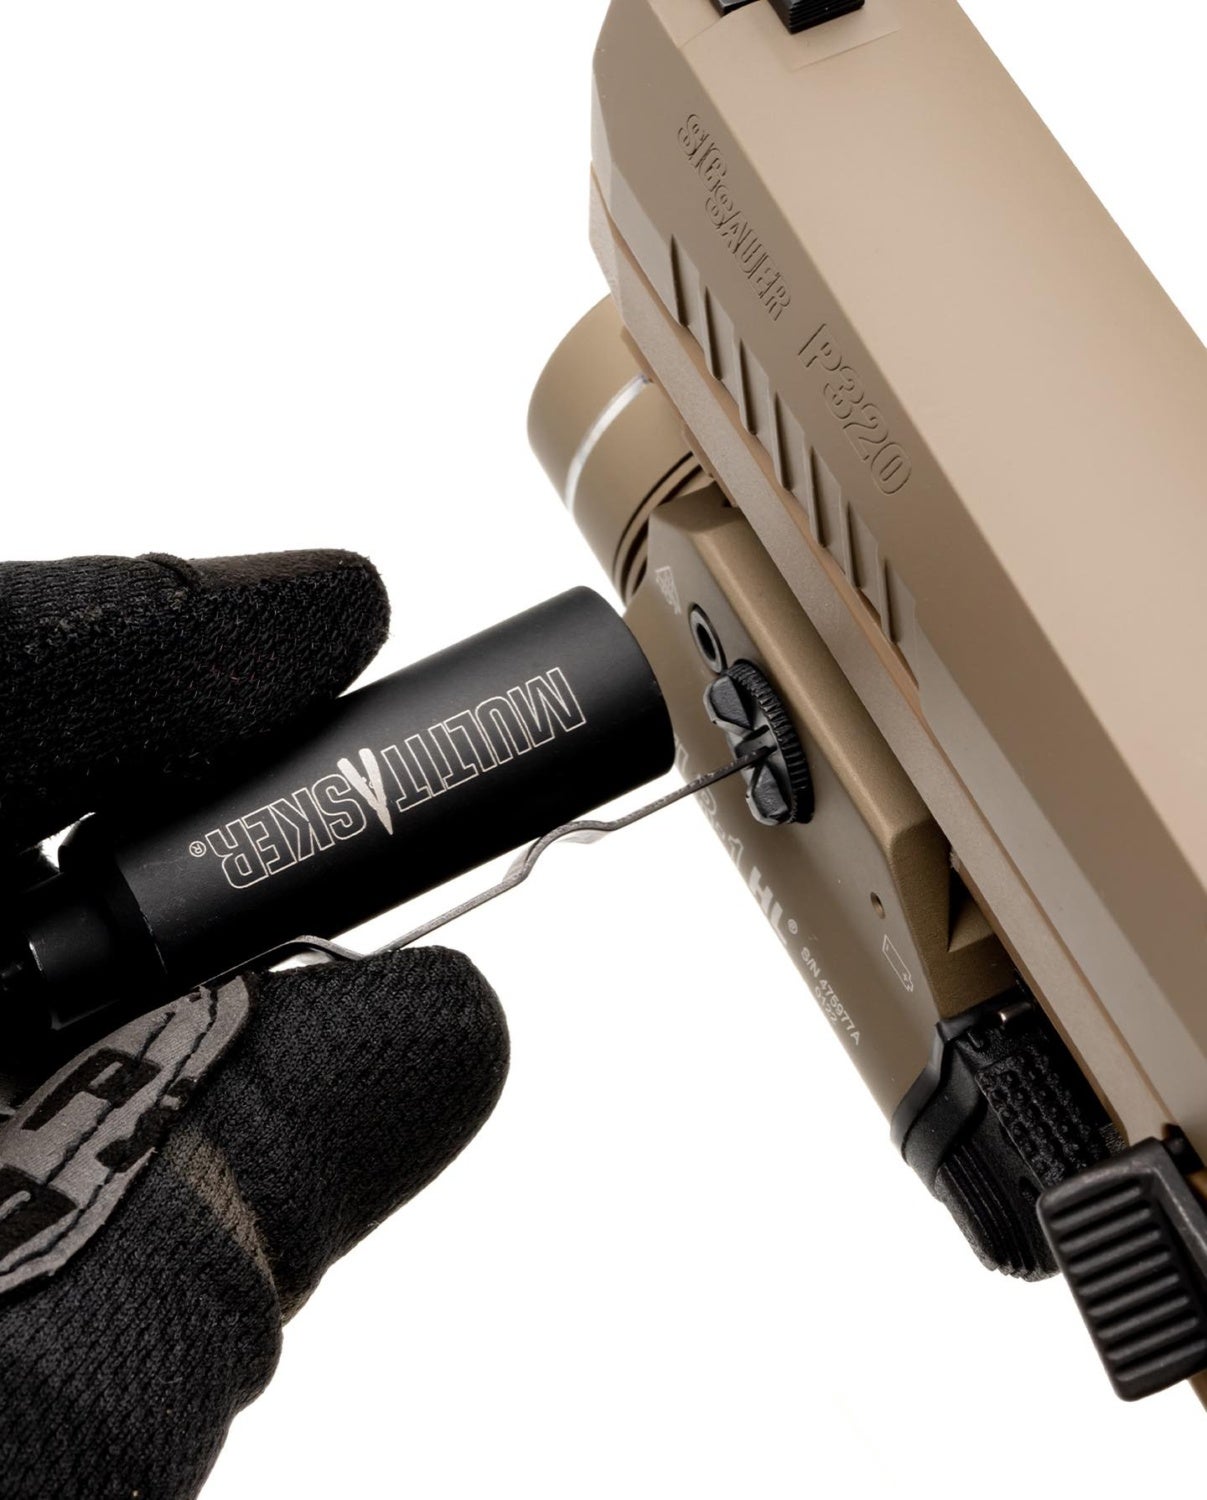 Low Profile Maintenance: The Multitasker Tools "Twist" Firearm Multitool